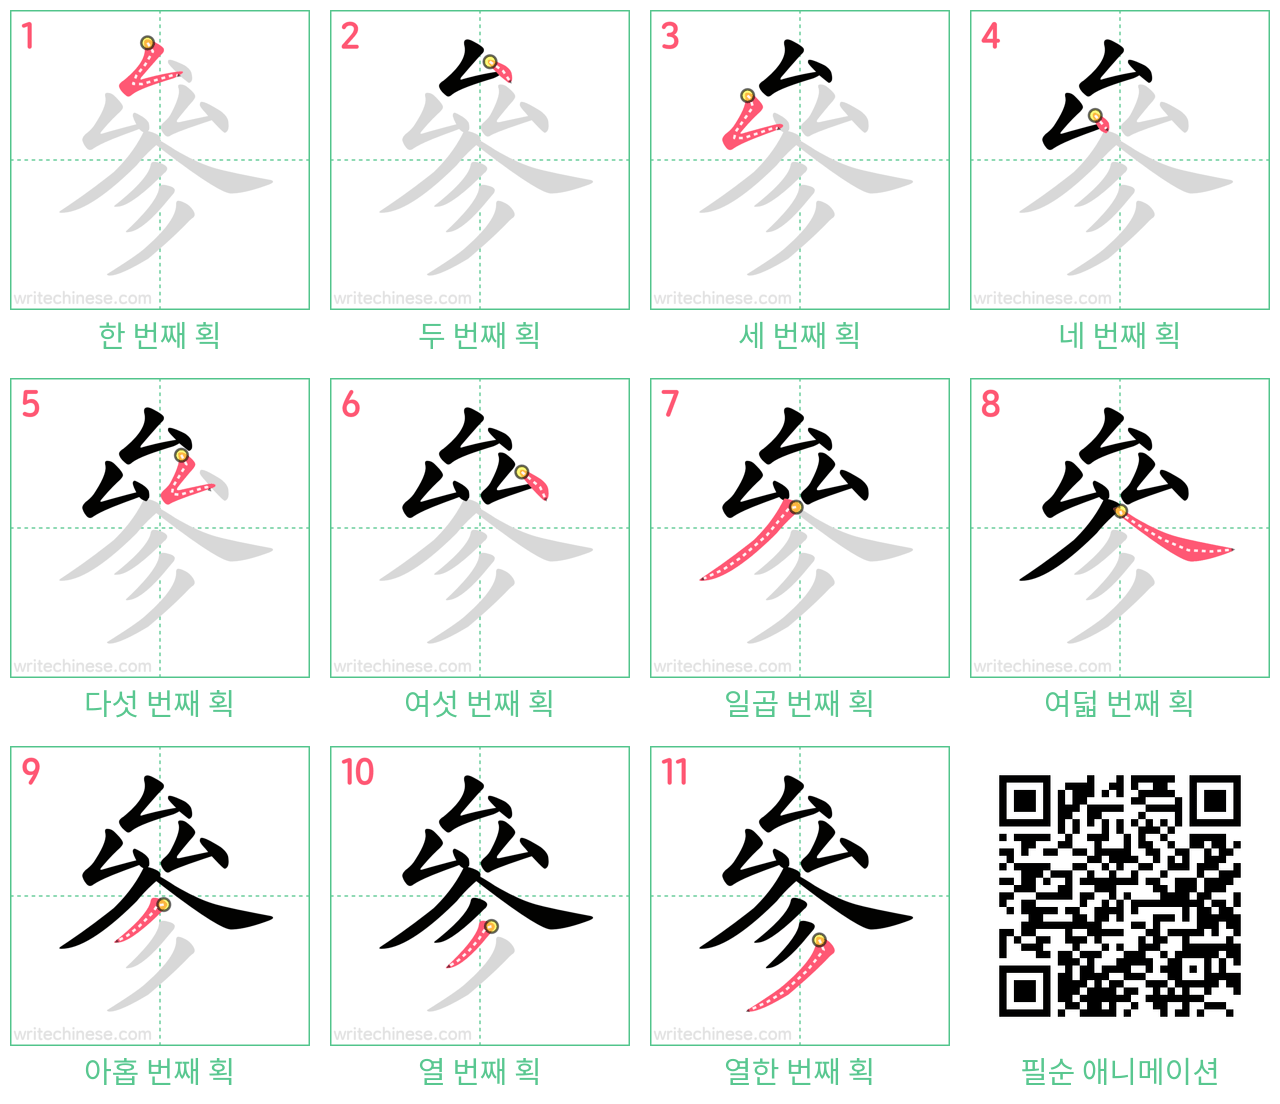 參 step-by-step stroke order diagrams